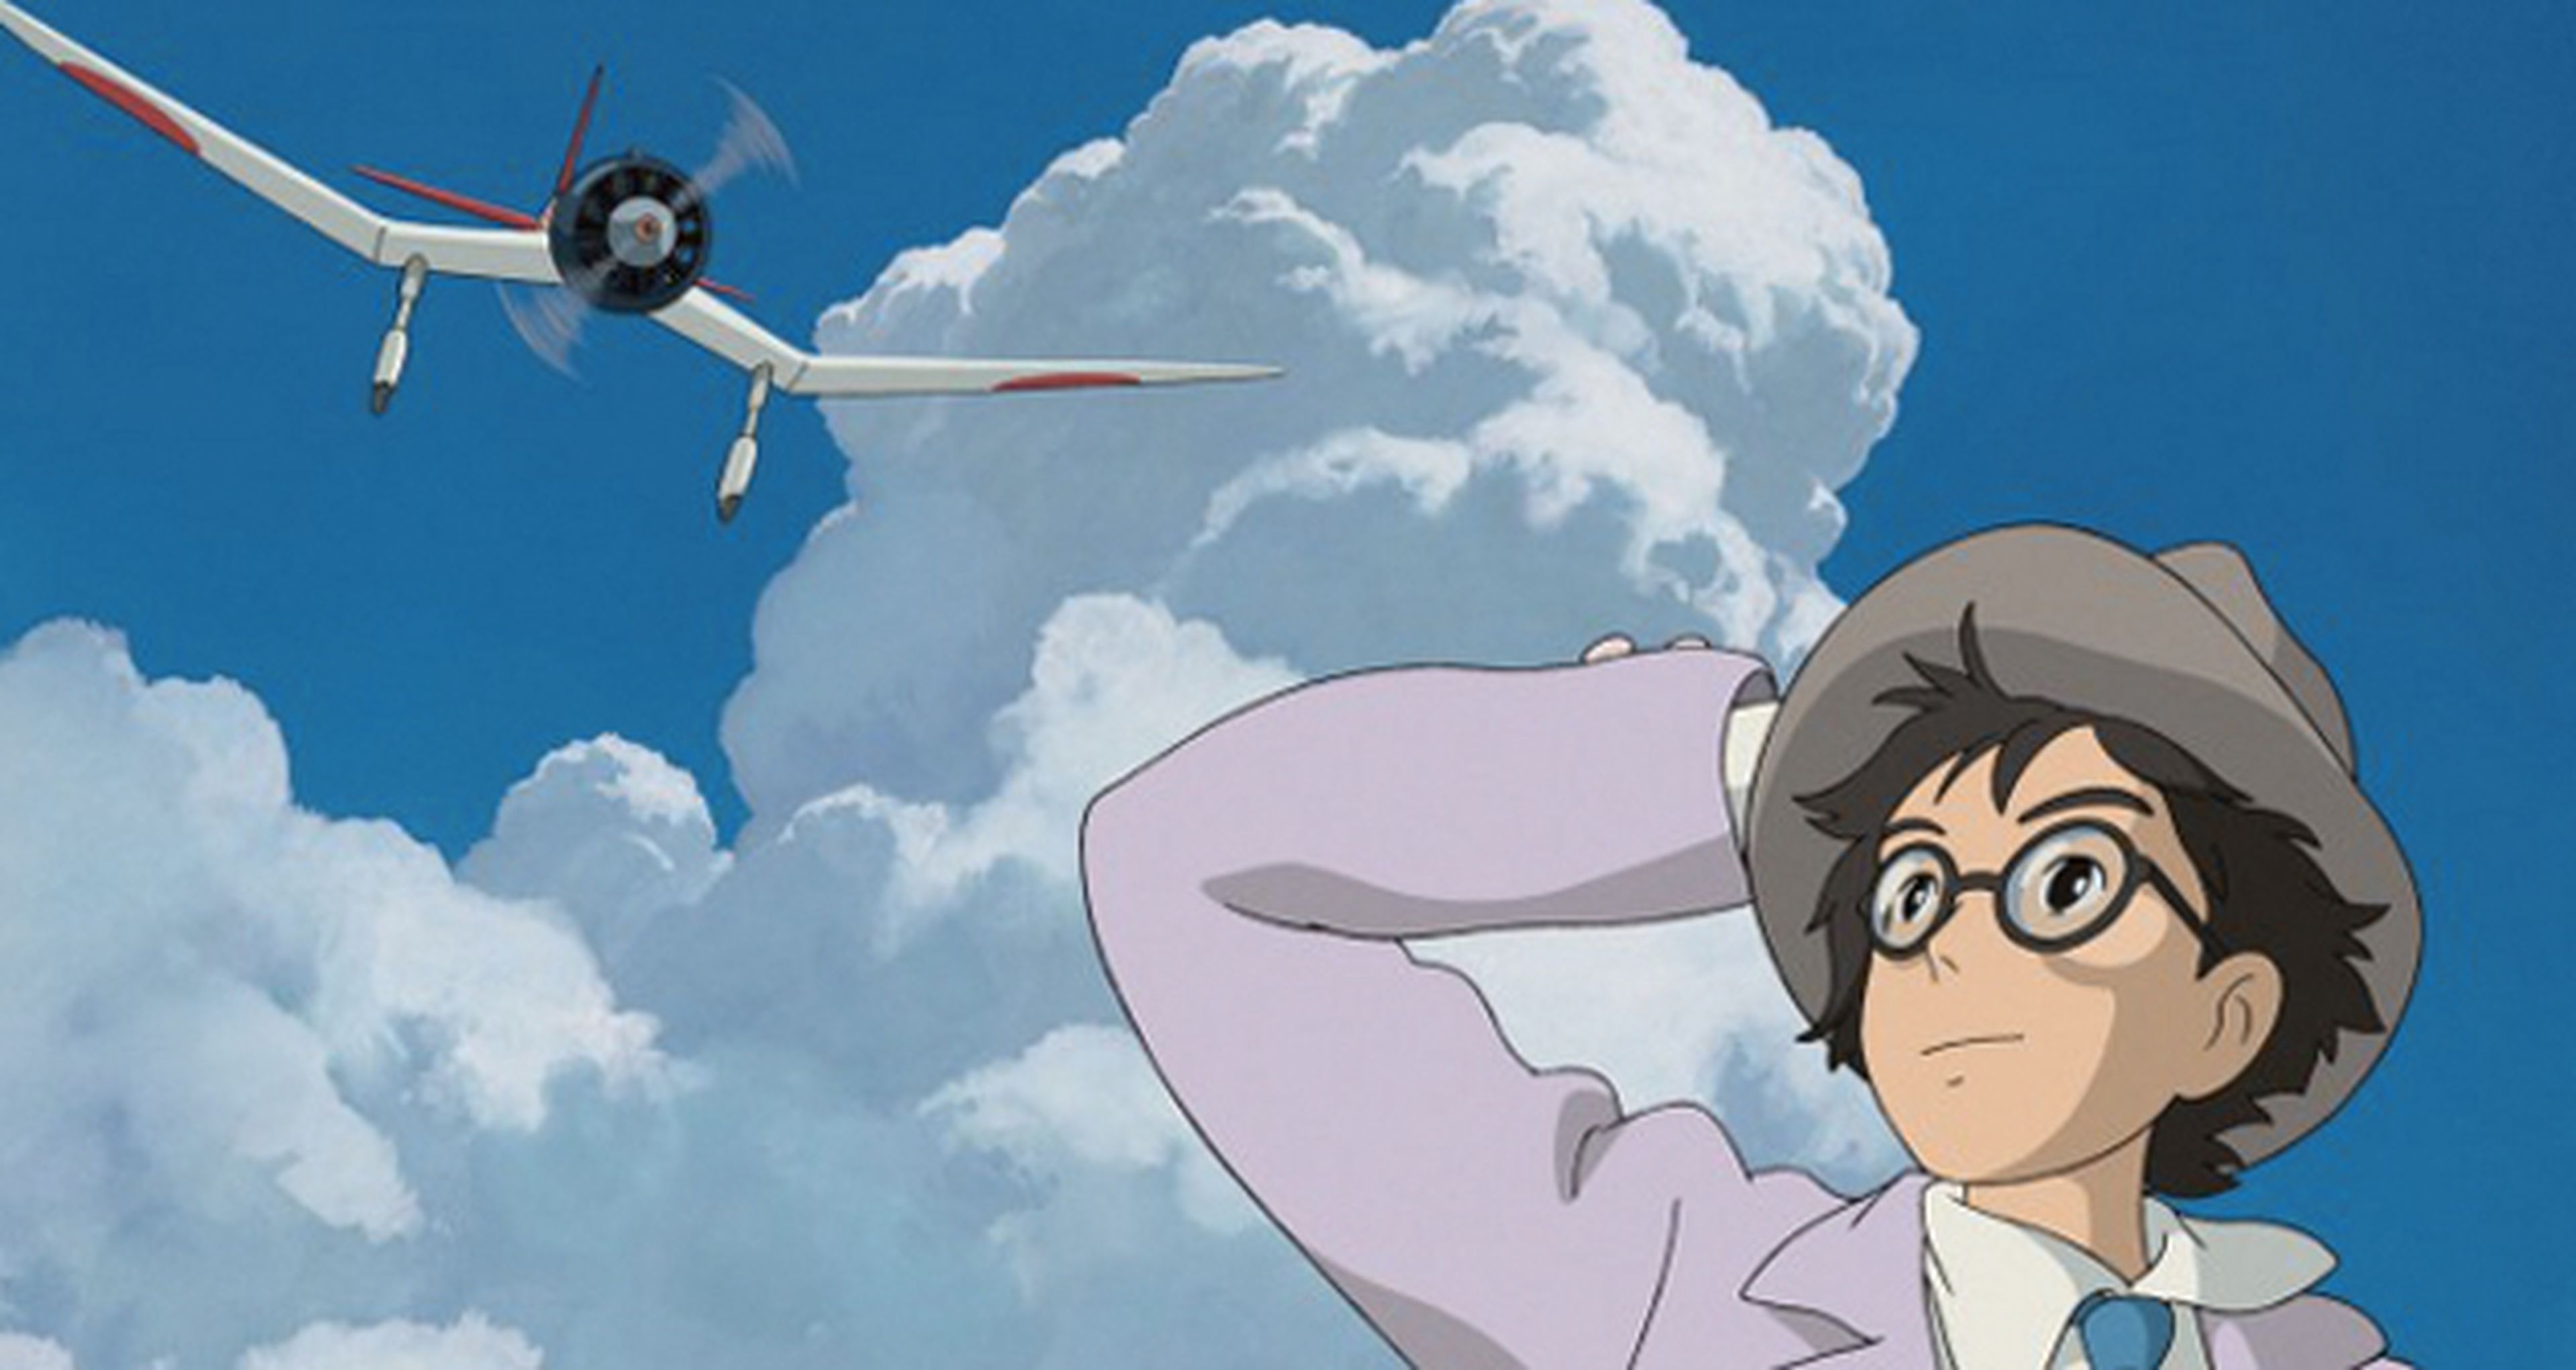 Crítica de El viento se levanta, de Hayao Miyazaki